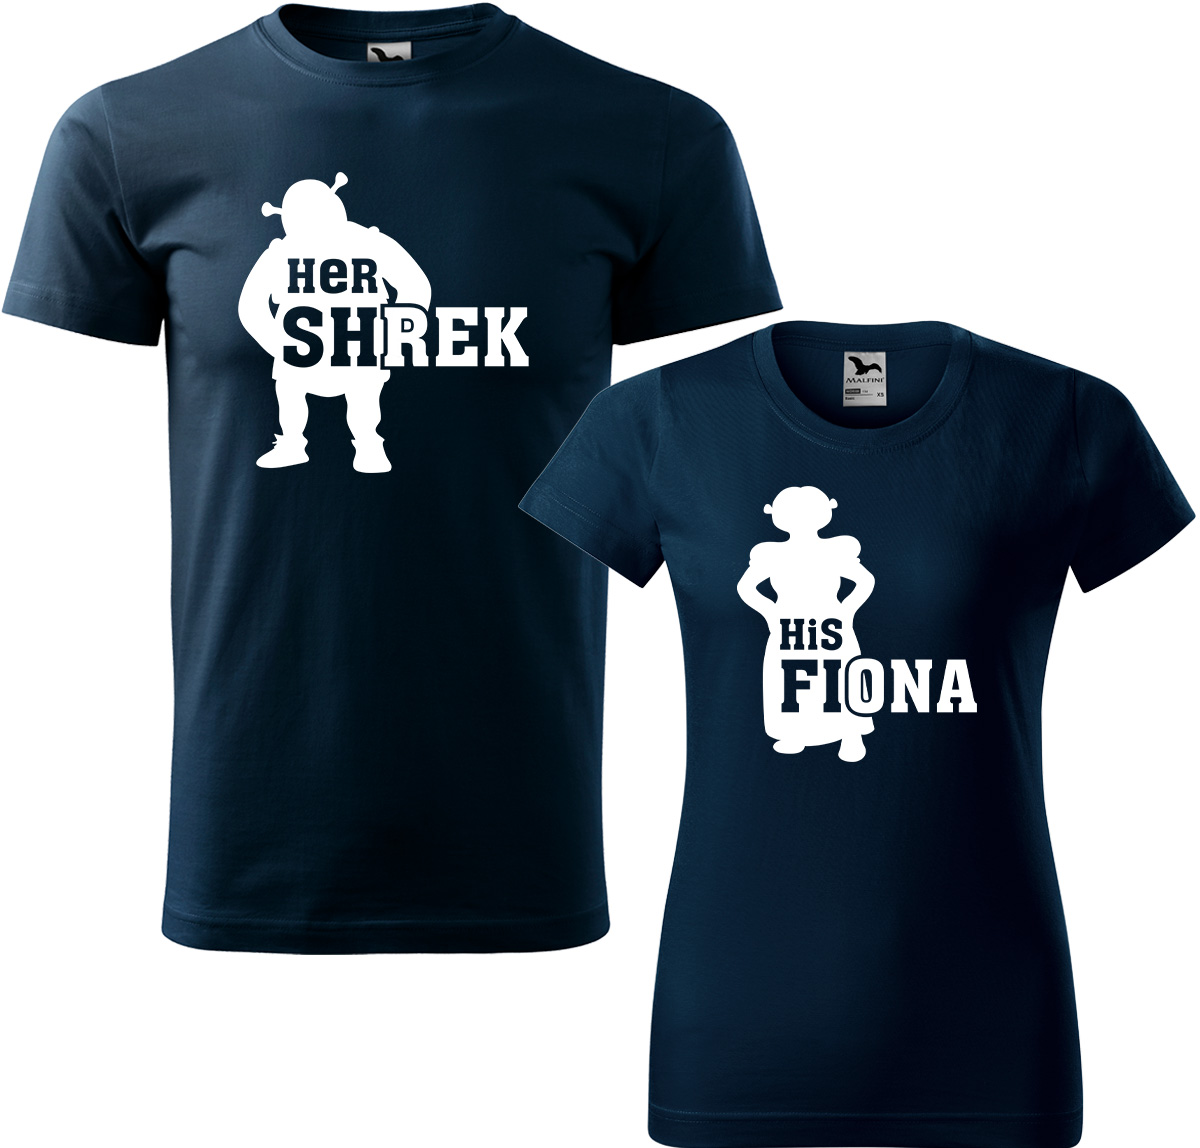 Trička pro páry - Shrek a Fiona Barva: Námořní modrá (02), Velikost dámské tričko: M, Velikost pánské tričko: L